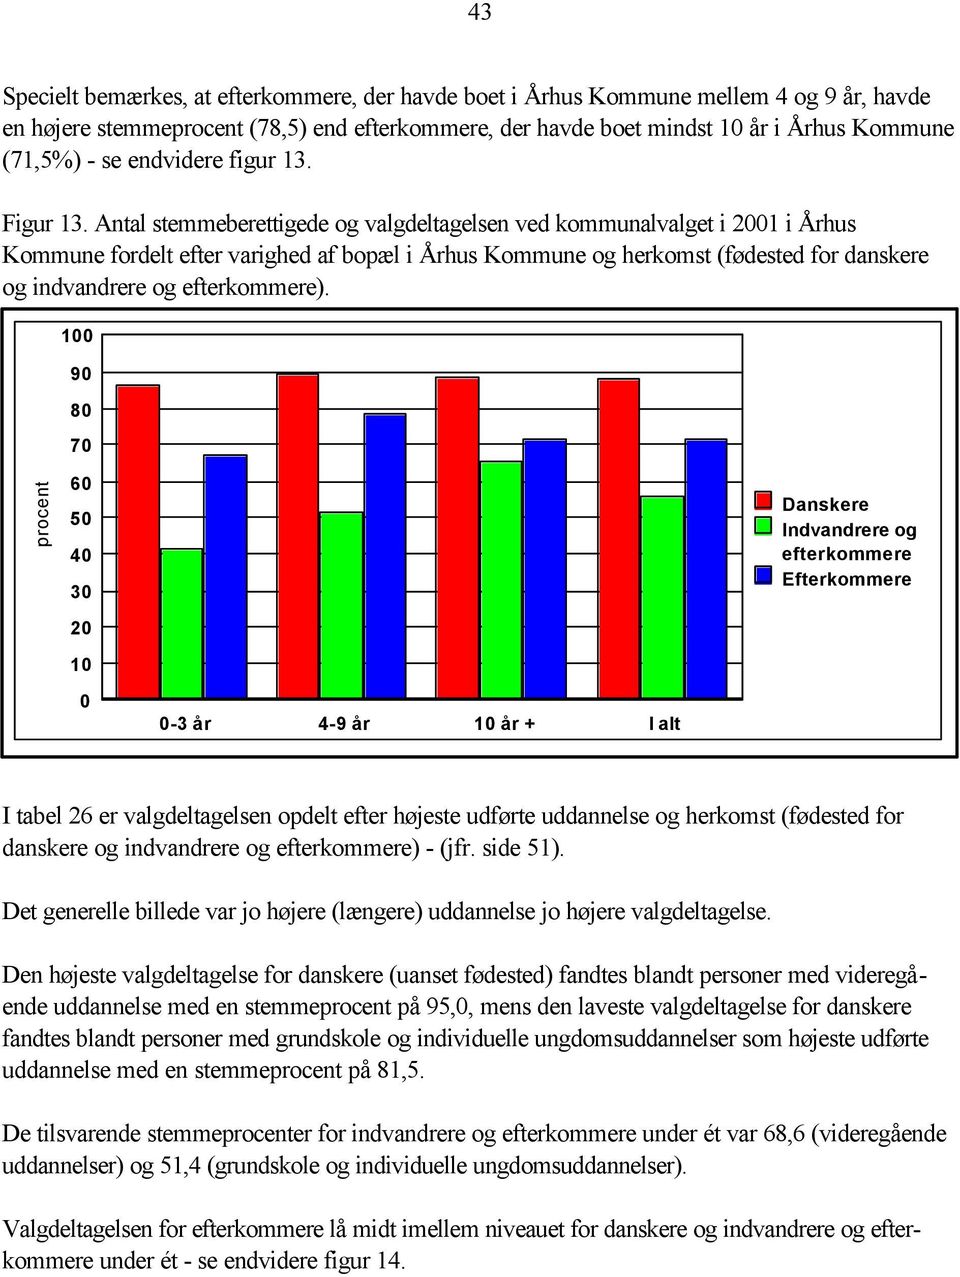 Antal stemmeberettigede og valgdeltagelsen ved kommunalvalget i 2001 i Århus Kommune fordelt efter varighed af bopæl i Århus Kommune og herkomst (fødested for danskere og indvandrere og efterkommere).